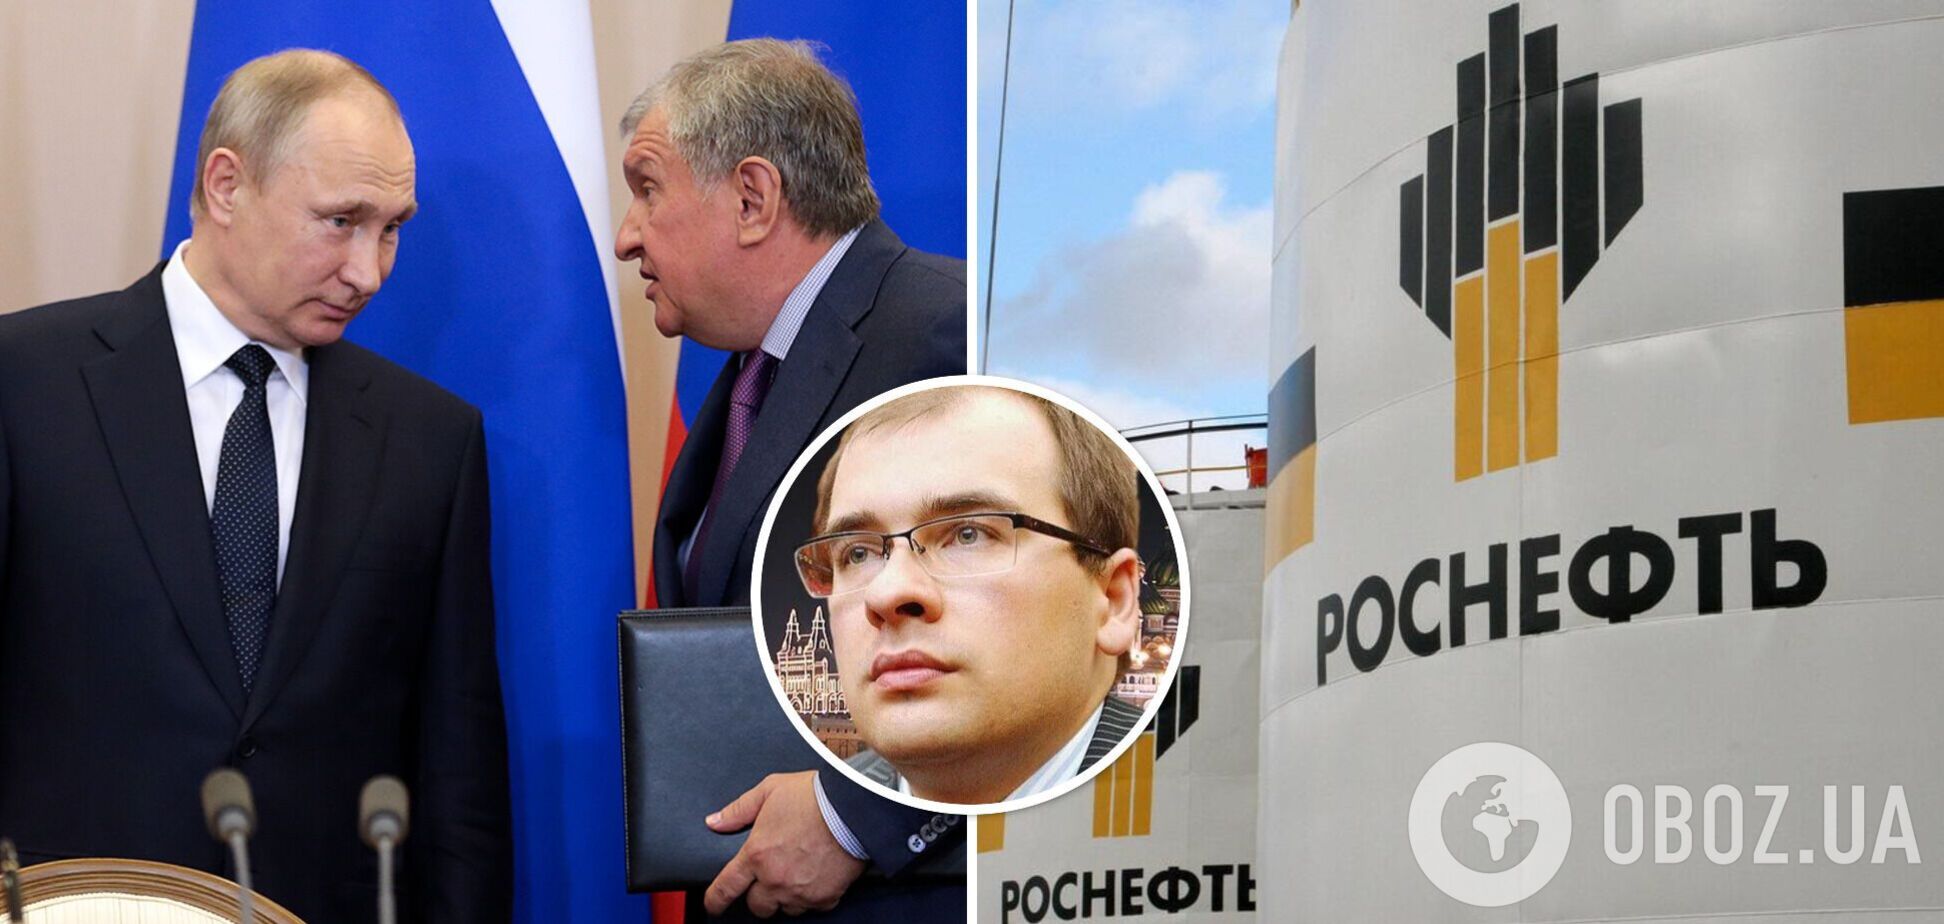 Помер 35-річний син голови 'Роснафти' Ігоря Сєчина, який також обіймав керівну посаду в компанії, – росЗМІ
